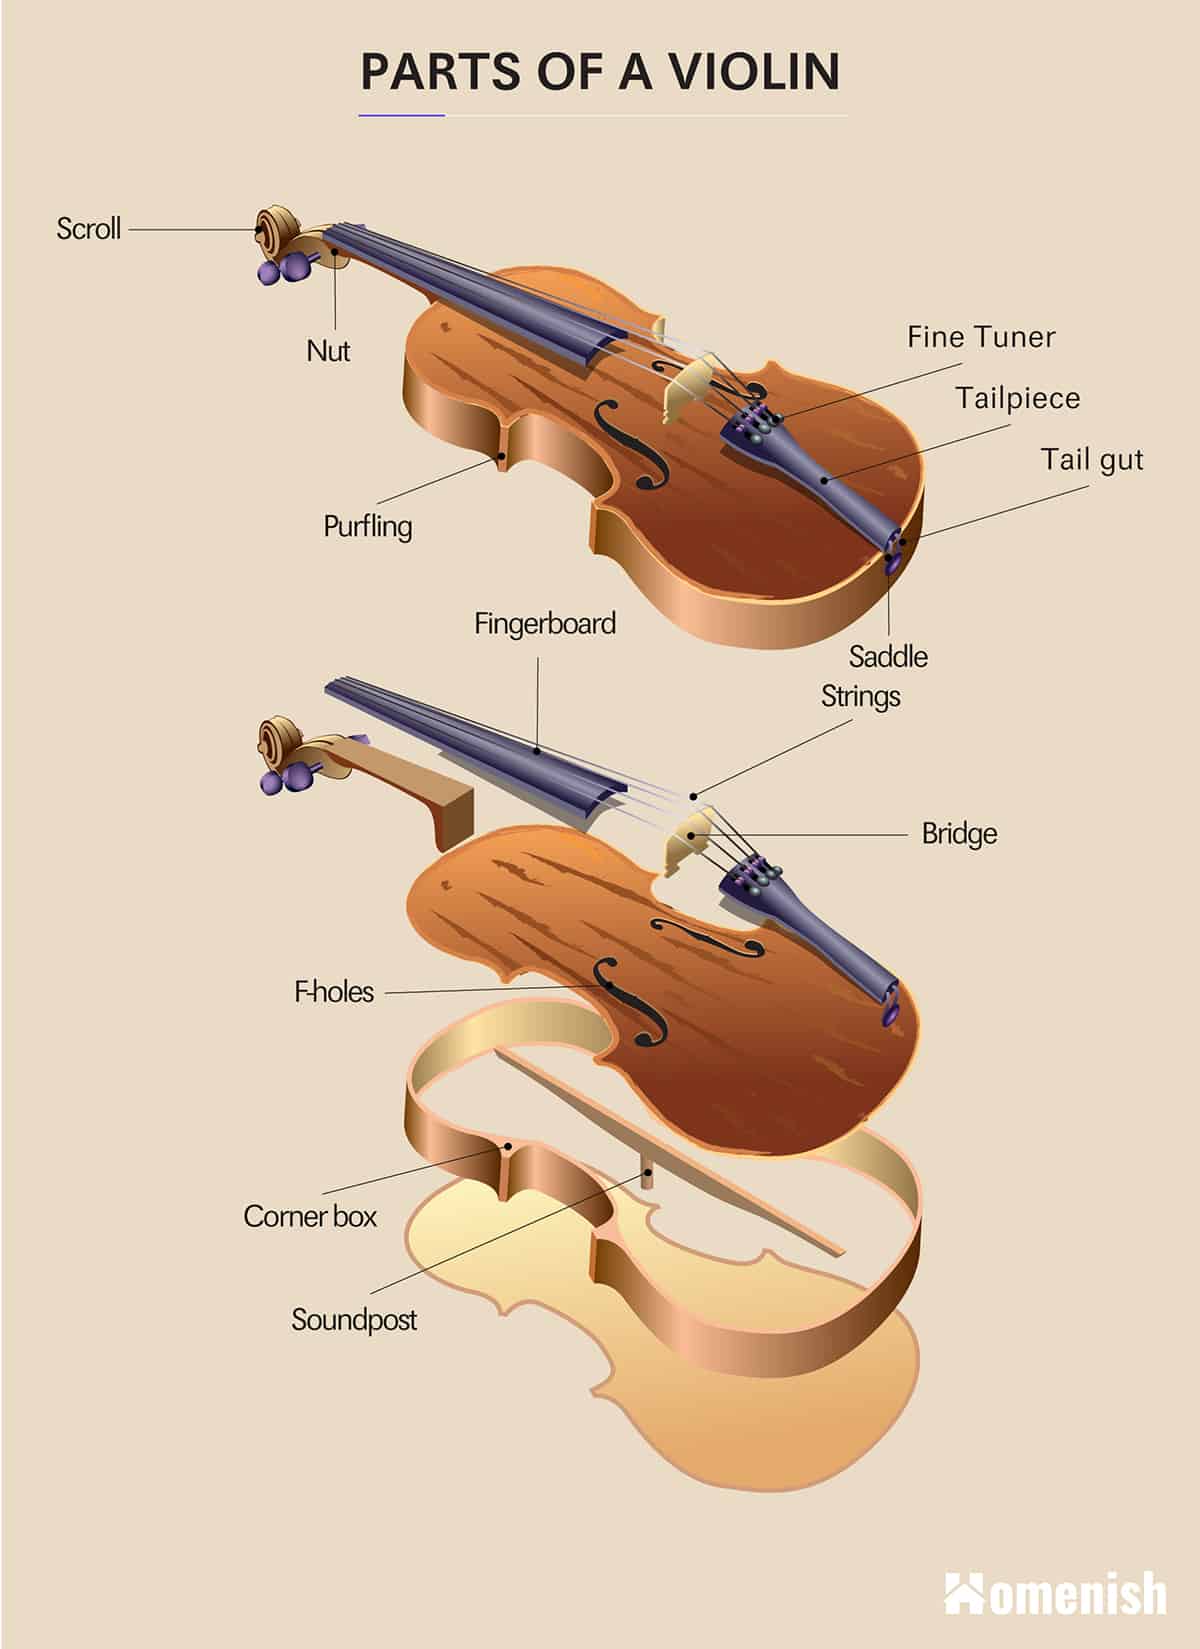 Parts of a Violin Diagram